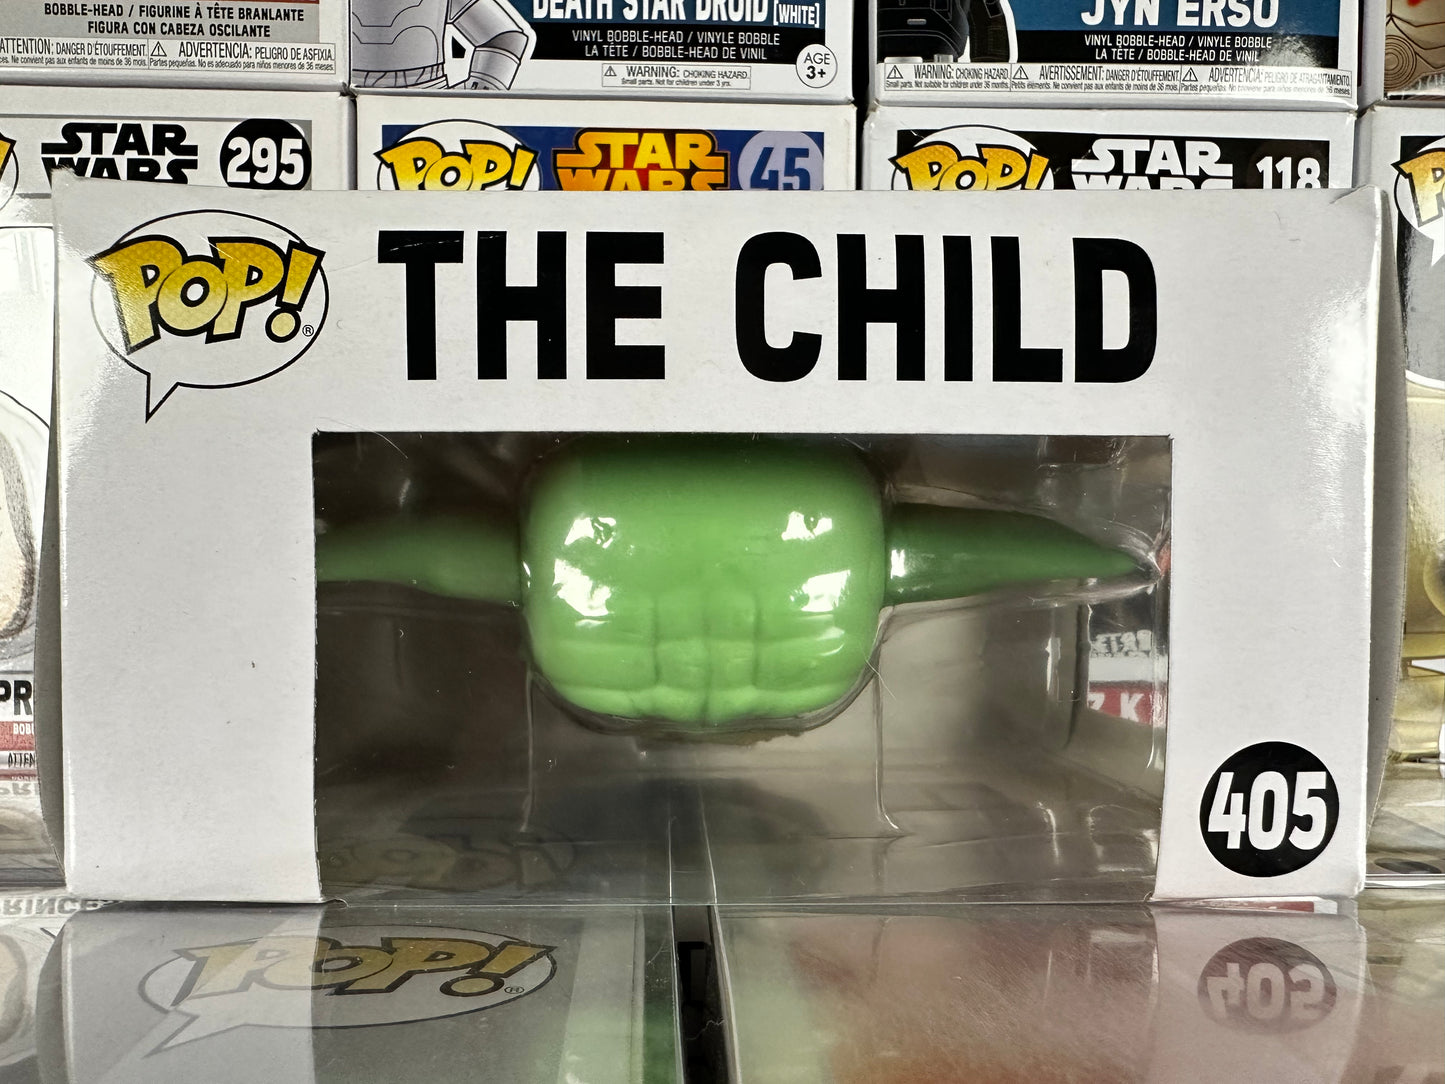 Star Wars - The Child (405)